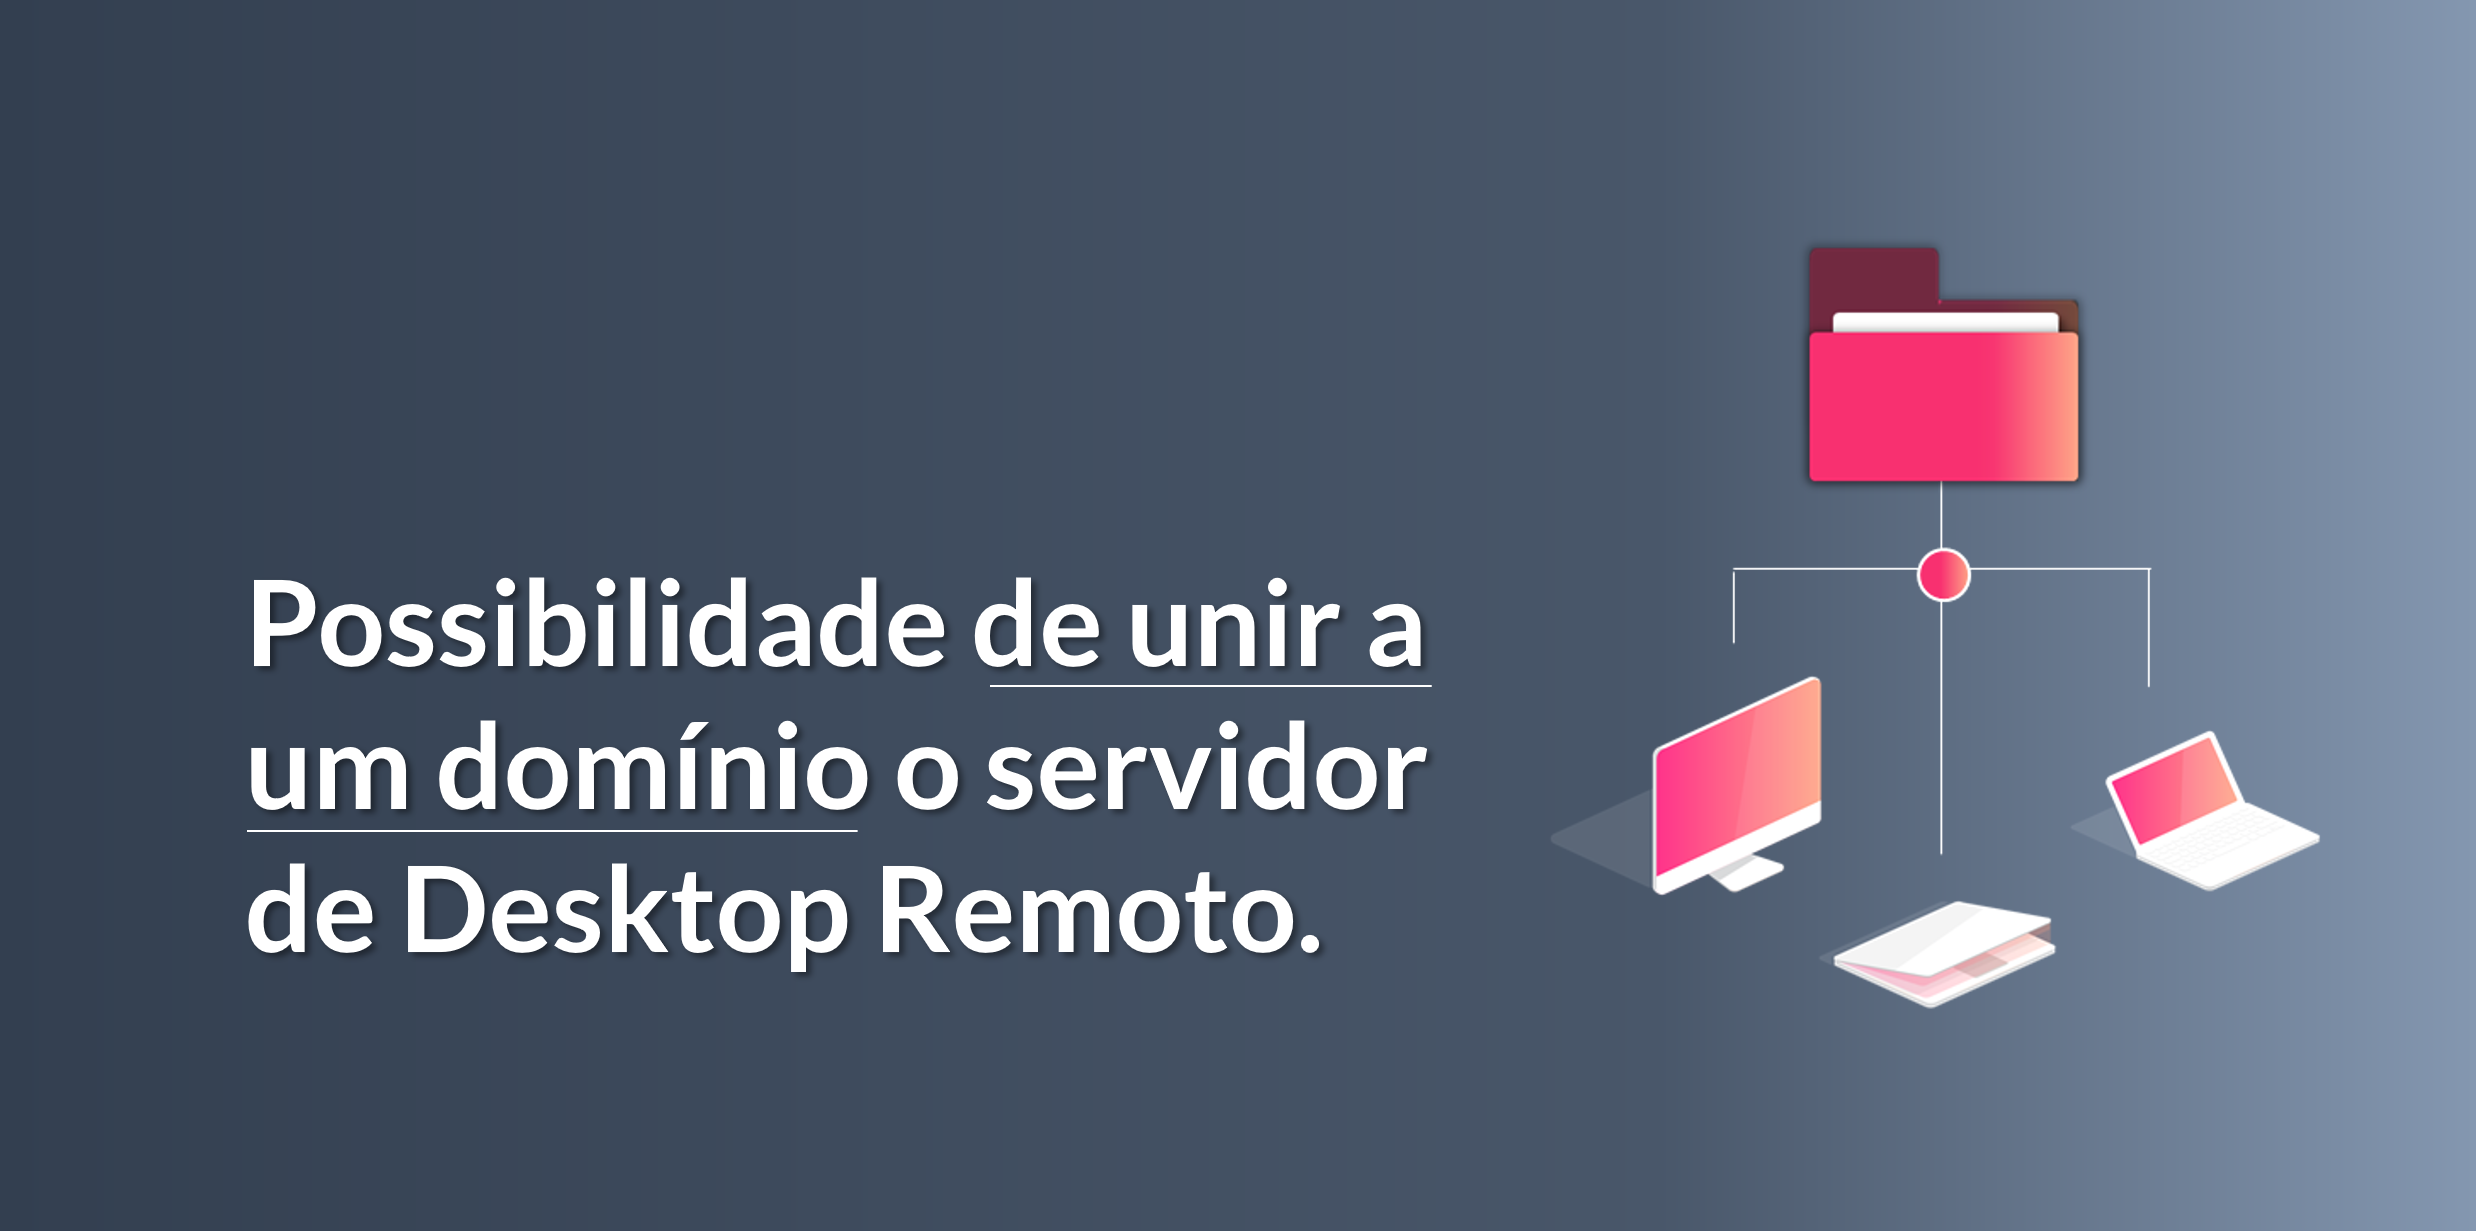 Possibilidade de associar o servidor de Desktop Remoto a um domínio